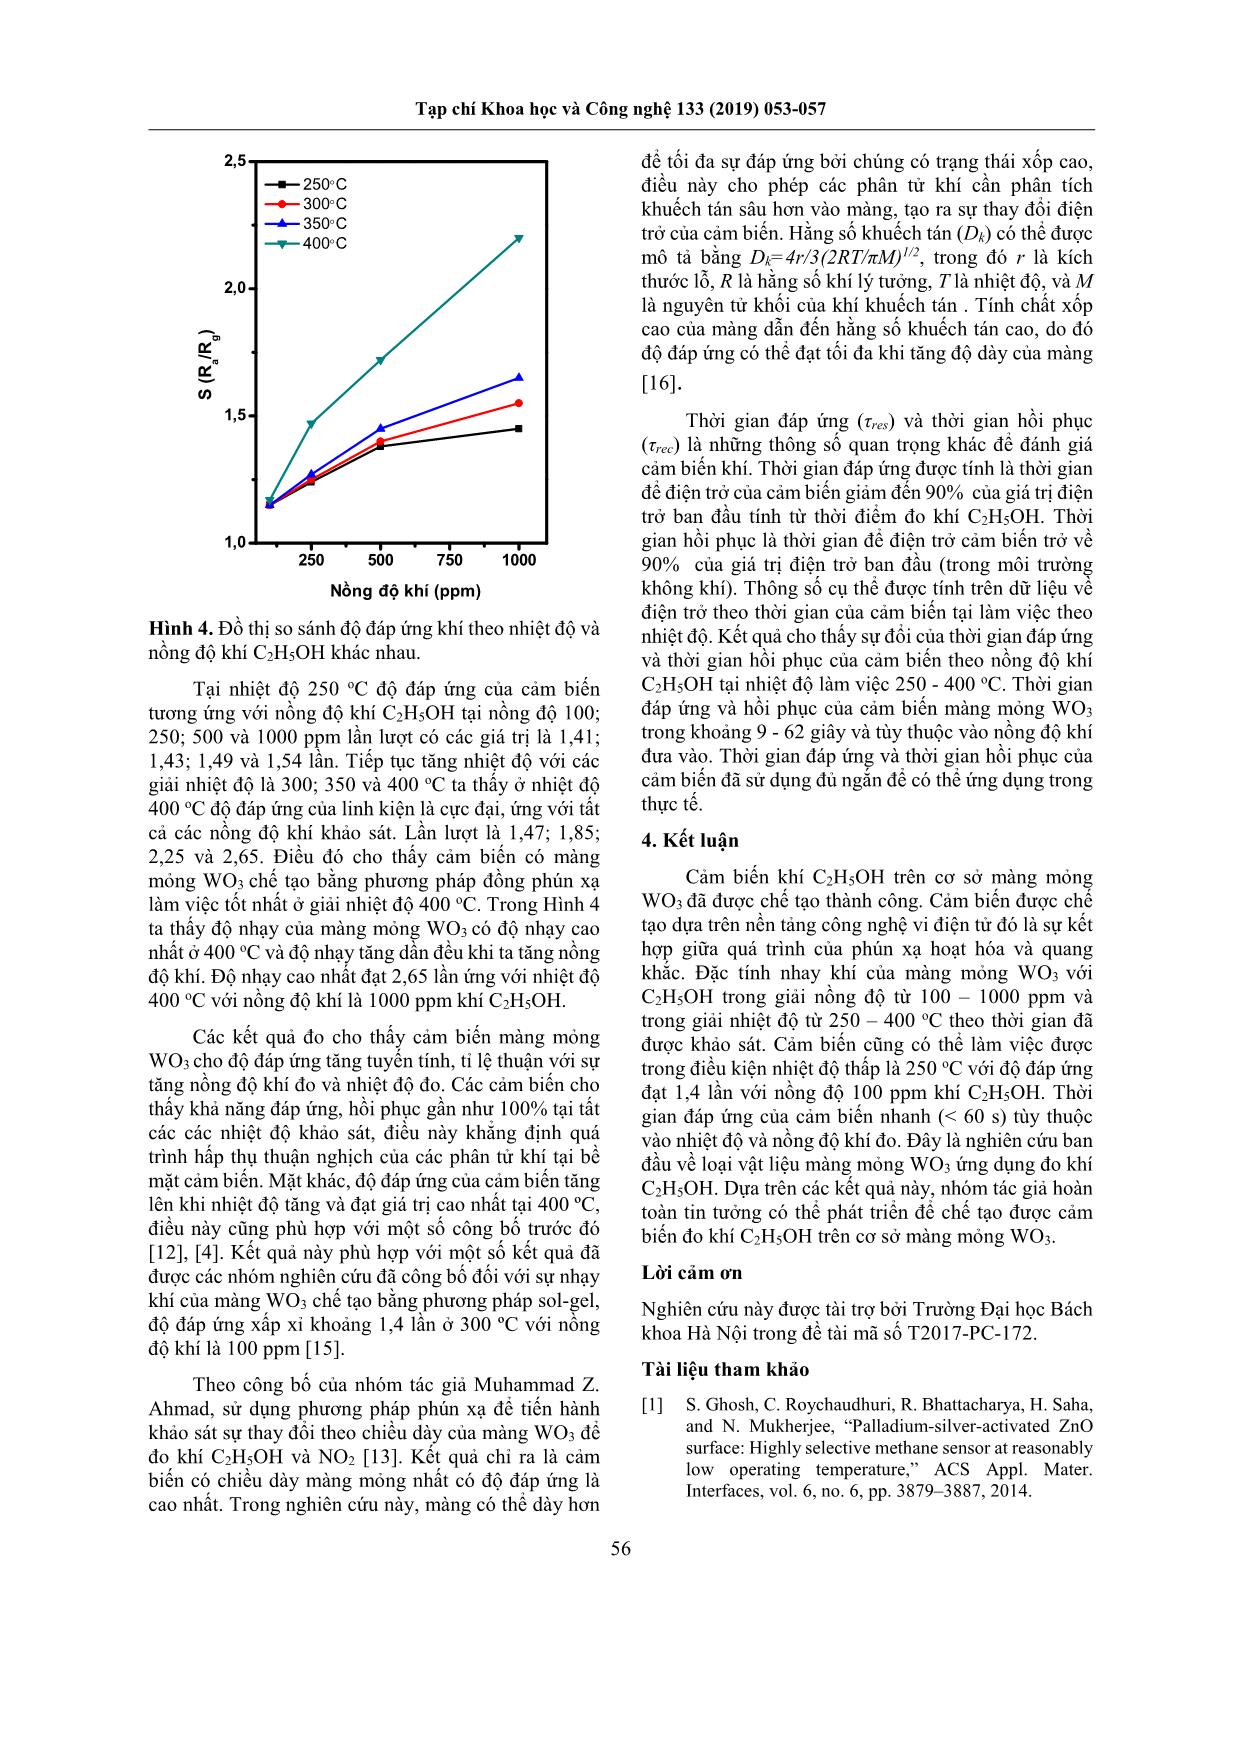 Nghiên cứu chế tạo cảm biến màng mỏng WO3 ứng dụng đo khí C2H5OH trang 4